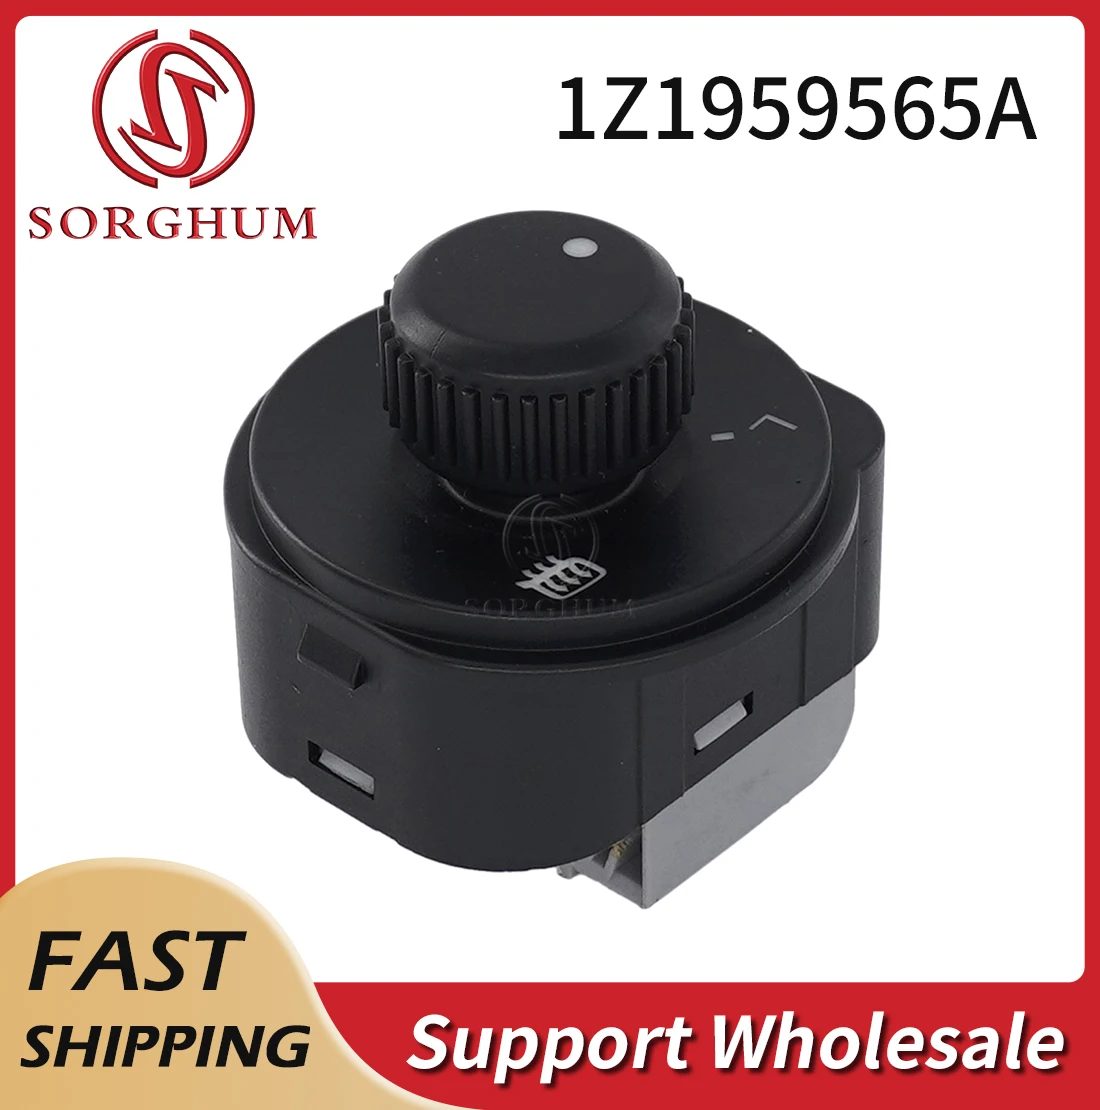 

Sorghum 1Z1959565A Car Control Adjustment Knob Auto Rearview Mirror Switch For SKODA Octavia MK2 II 1Z 2004-2013 Yeti 1ZD959565